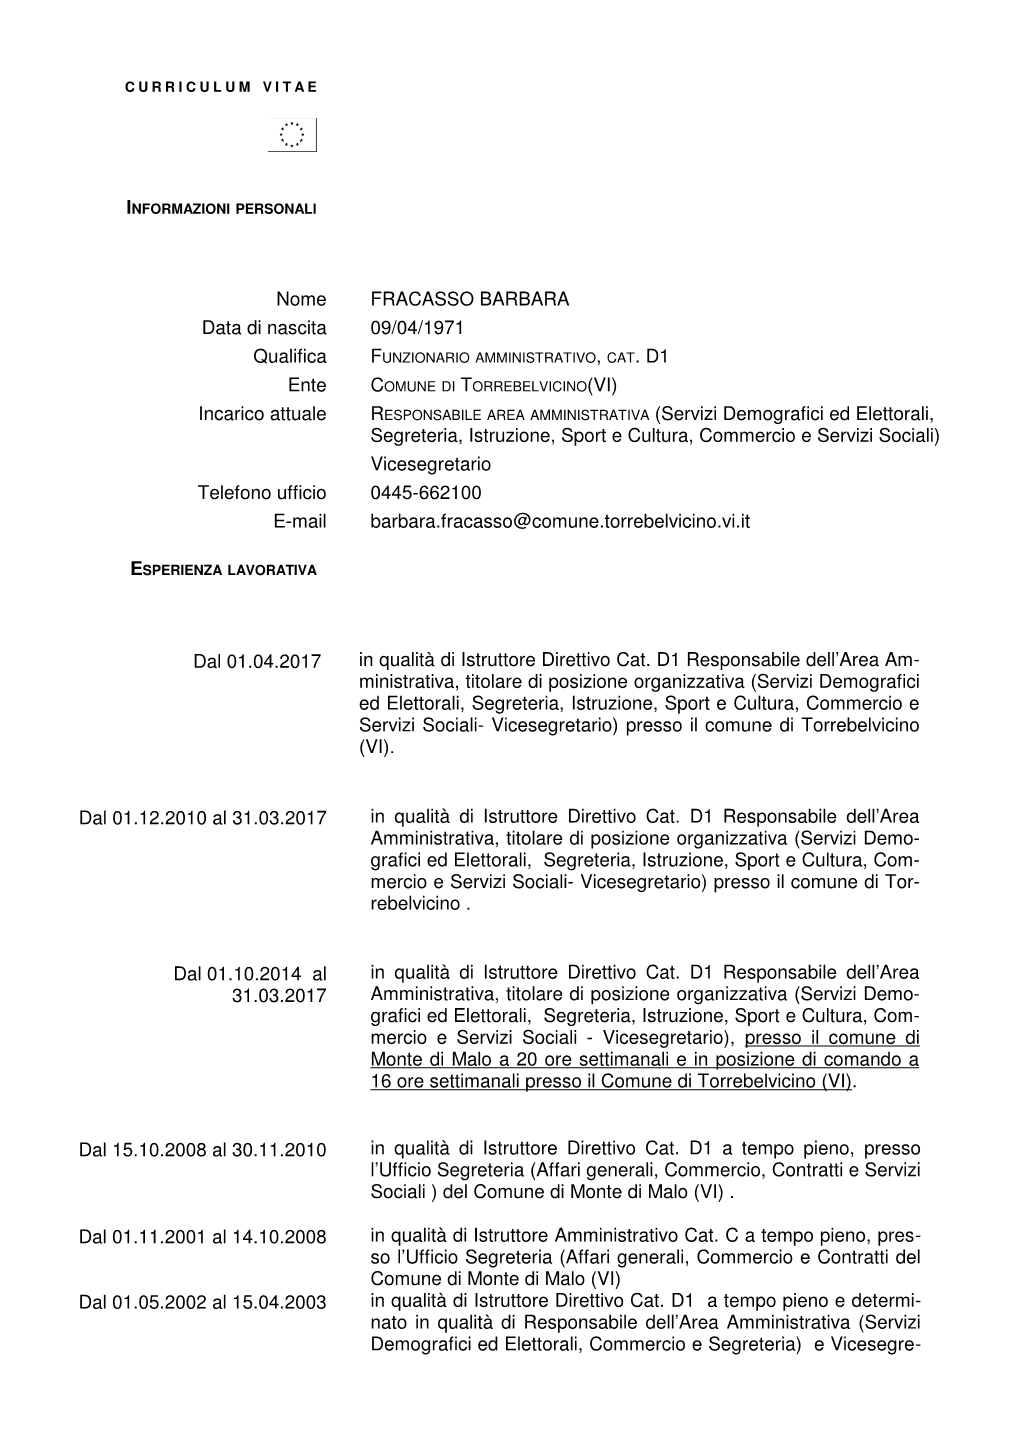 Nome FRACASSO BARBARA Data Di Nascita 09/04/1971 Qualifica , CAT. D1 Ente Incarico Attuale (Servizi Demografici Ed Elettorali